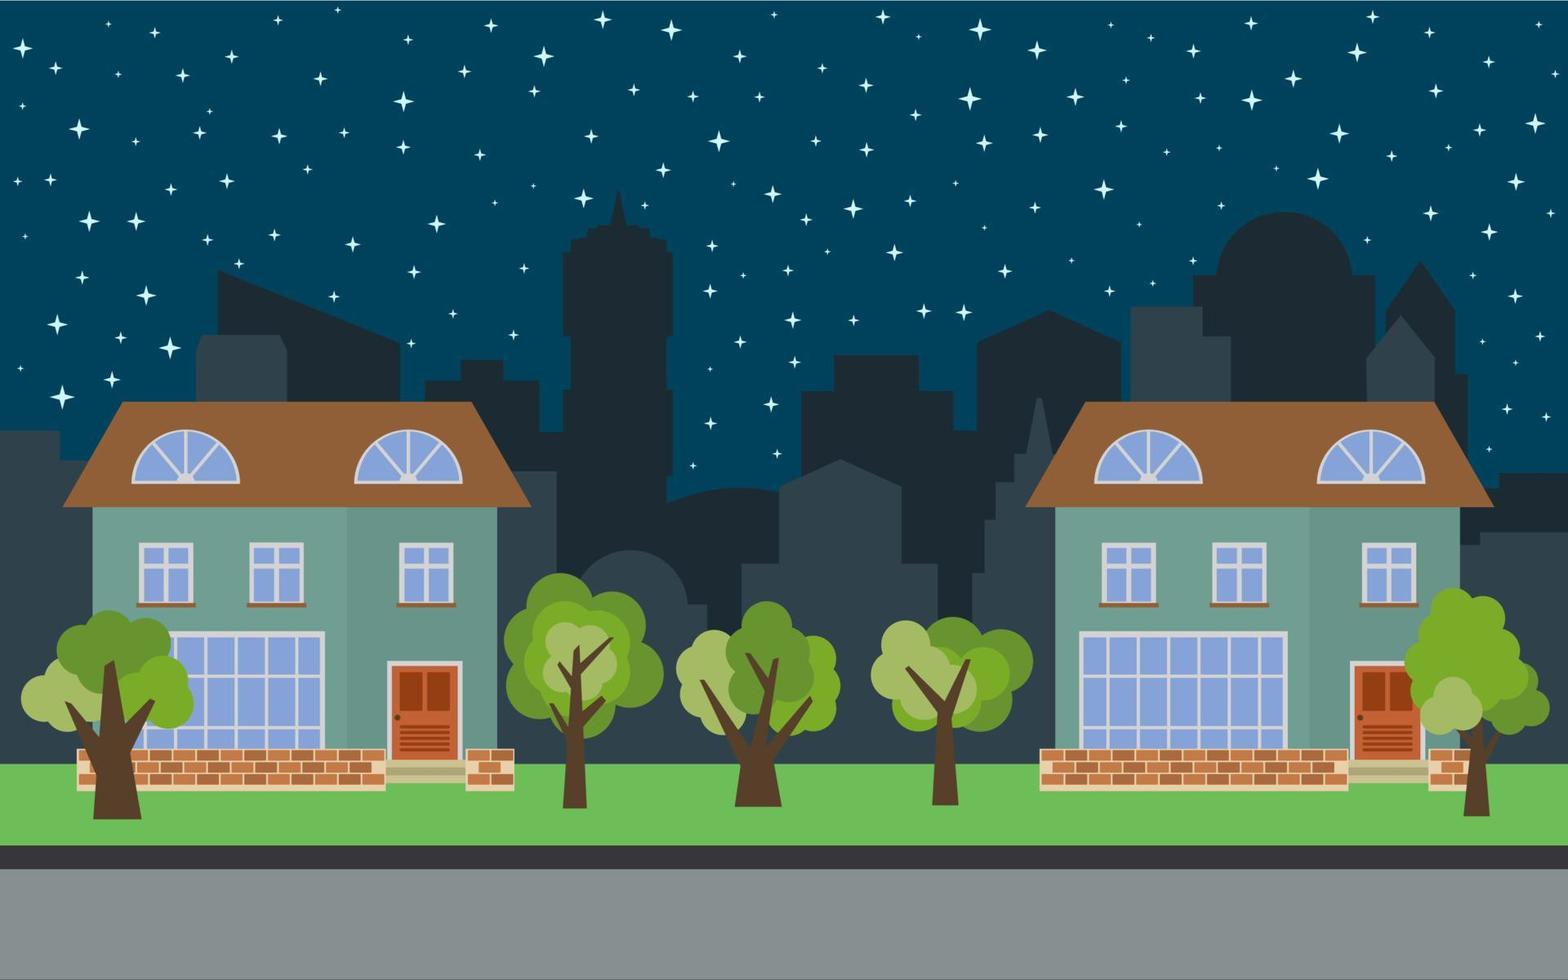 cidade vetorial com duas casas de desenhos animados de dois andares e árvores verdes à noite. paisagem urbana de verão. vista de rua com paisagem urbana em um fundo vetor